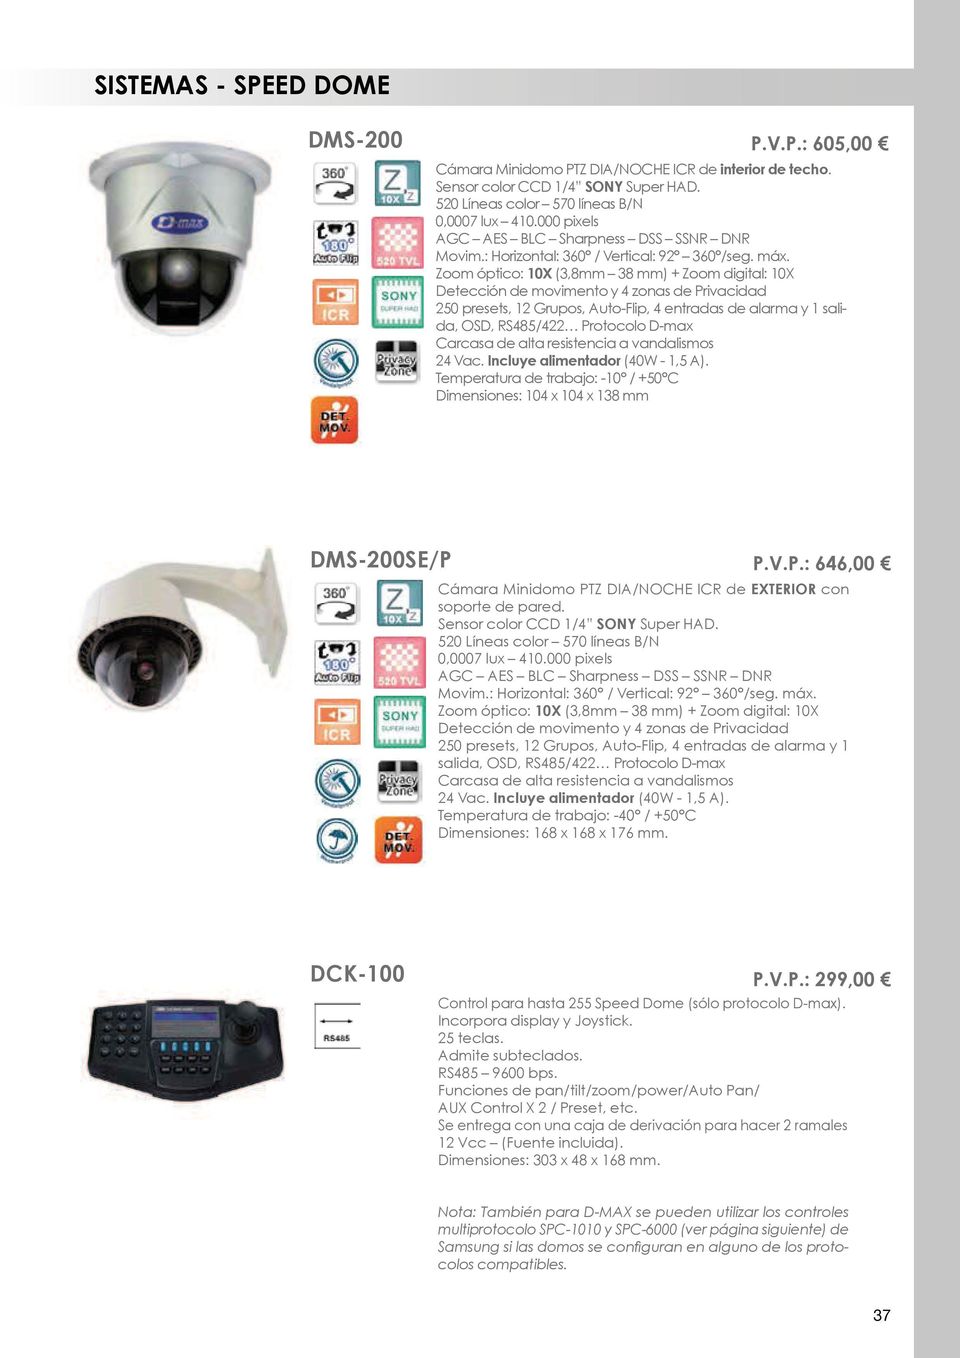 Zoom óptico: 10X (3,8mm 38 mm) + Zoom digital: 10X Detección de movimento y 4 zonas de Privacidad 250 presets, 12 Grupos, Auto-Flip, 4 entradas de alarma y 1 salida, OSD, RS485/422 Protocolo D-max